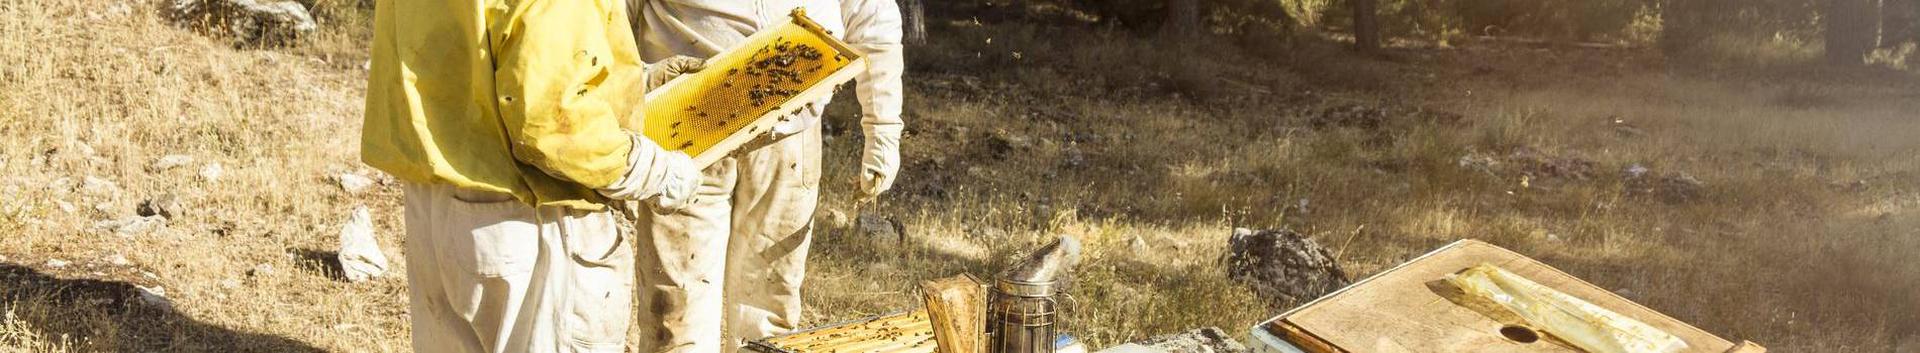 Mesila asub Võrtsjärve lõunatipus Vooremäe linnusemäe jalamil Vooremäe talus. Korjealaks on Väike- Emajõe suudmeala ümbritsevad metsa ja niiduala taimed. Mesilagruppide asukohad on eemal põllumajandus kultuurpõldudest. Soovime ise süüa ja teistele pakkuda puhtast loodusest korjatud mett ja mesindustooteid. Vurritus- ja pakenduskeskus asub Viljandimaal Viljandi vallas Vardja külas Tiigiääre talus. Omame VTA poolt väljastatud tegevusluba.